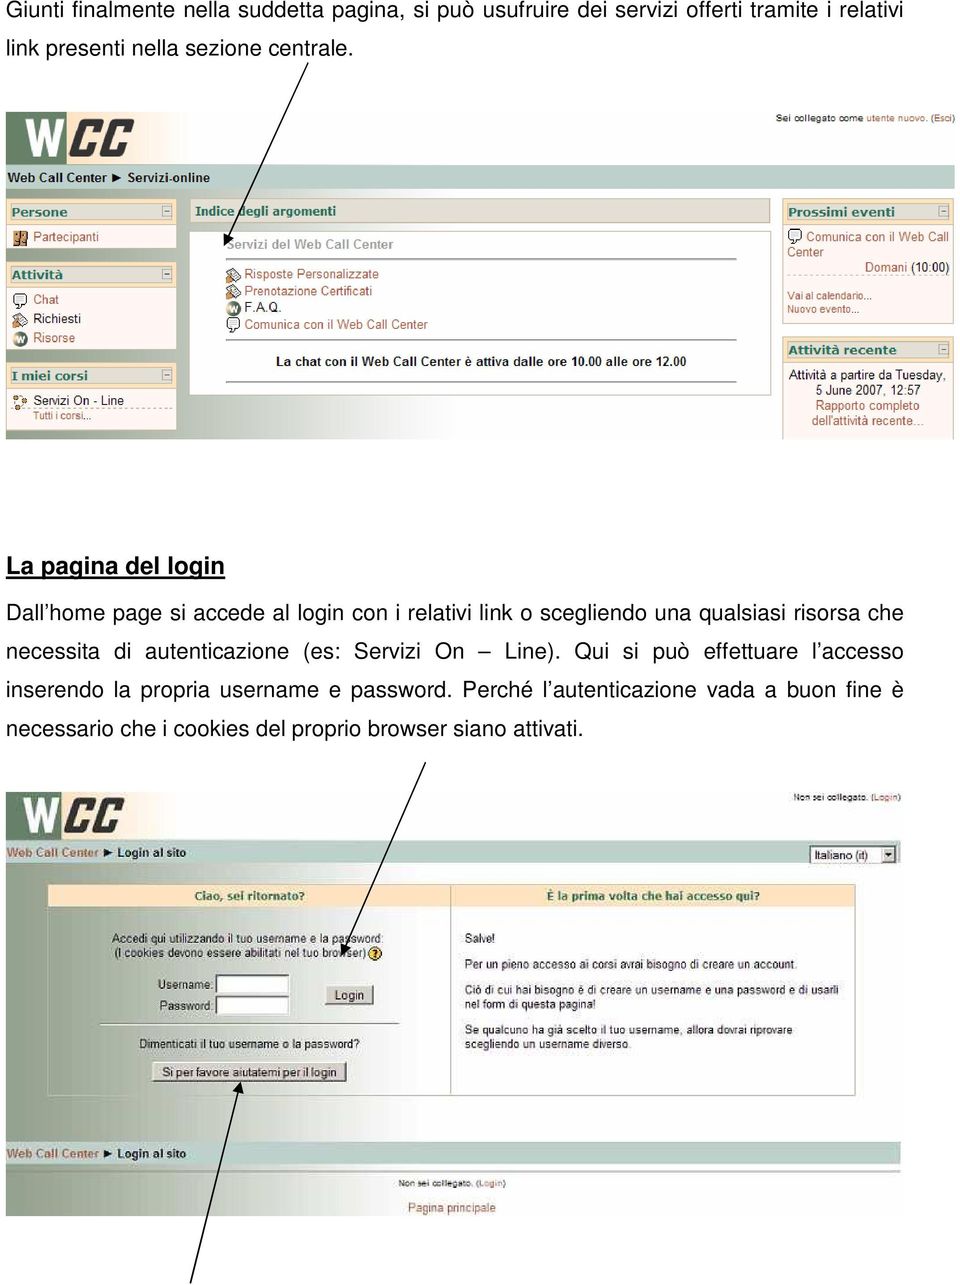 La pagina del login Dall home page si accede al login con i relativi link o scegliendo una qualsiasi risorsa che